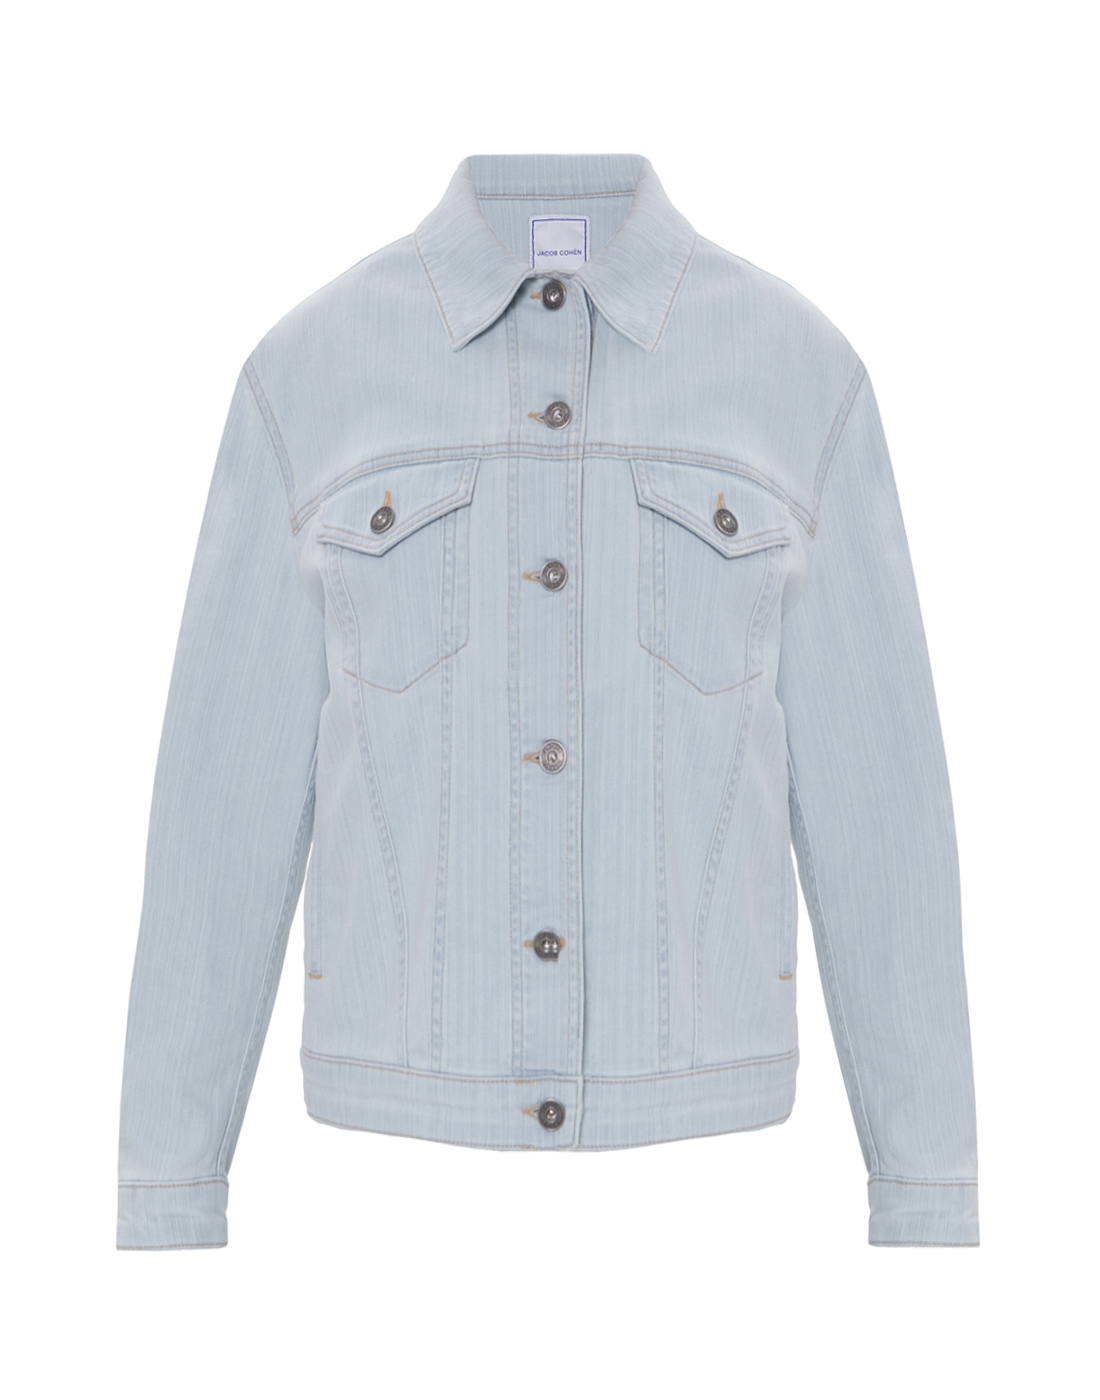 Рубашка джинсовая женская Jacob Cohen SV H 004 03 S 4140 290F-1